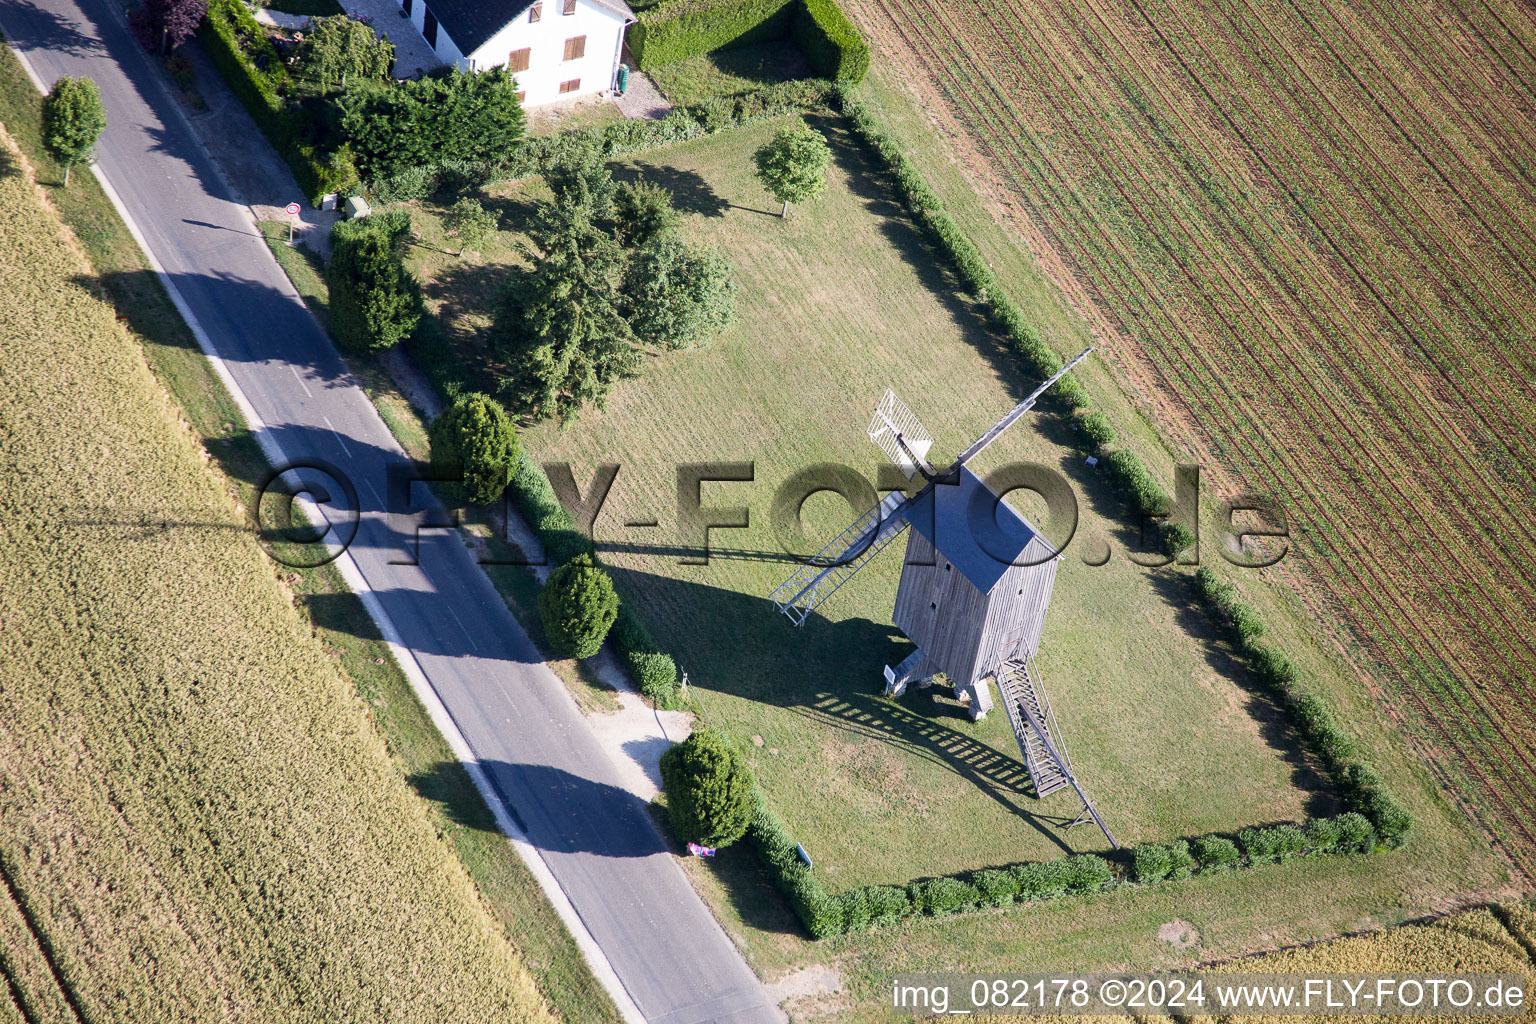 Historische Windmühle am Gehöft eines Bauernhofes am Rand von bestellten Feldern in Talcy in Centre-Val de Loire im Bundesland Loir-et-Cher, Frankreich